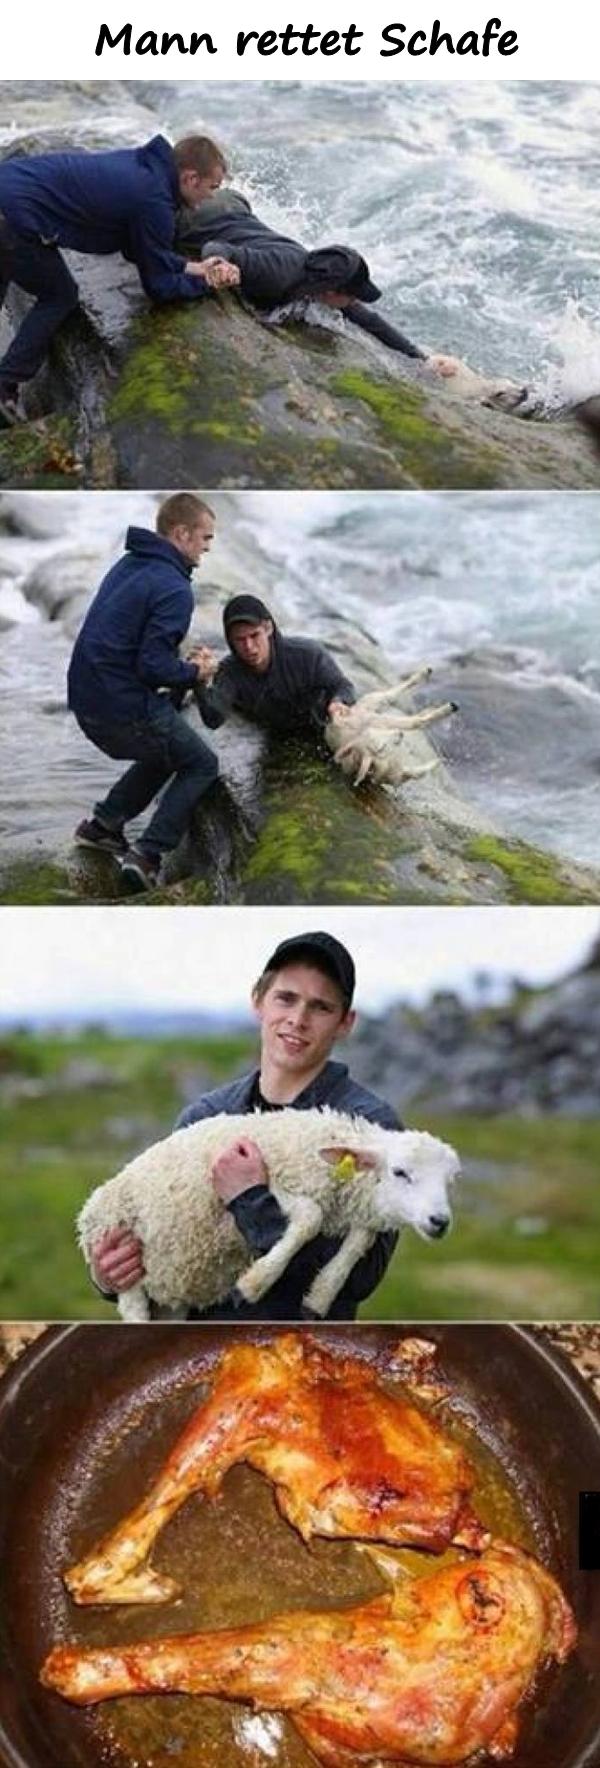 Mann rettet Schafe